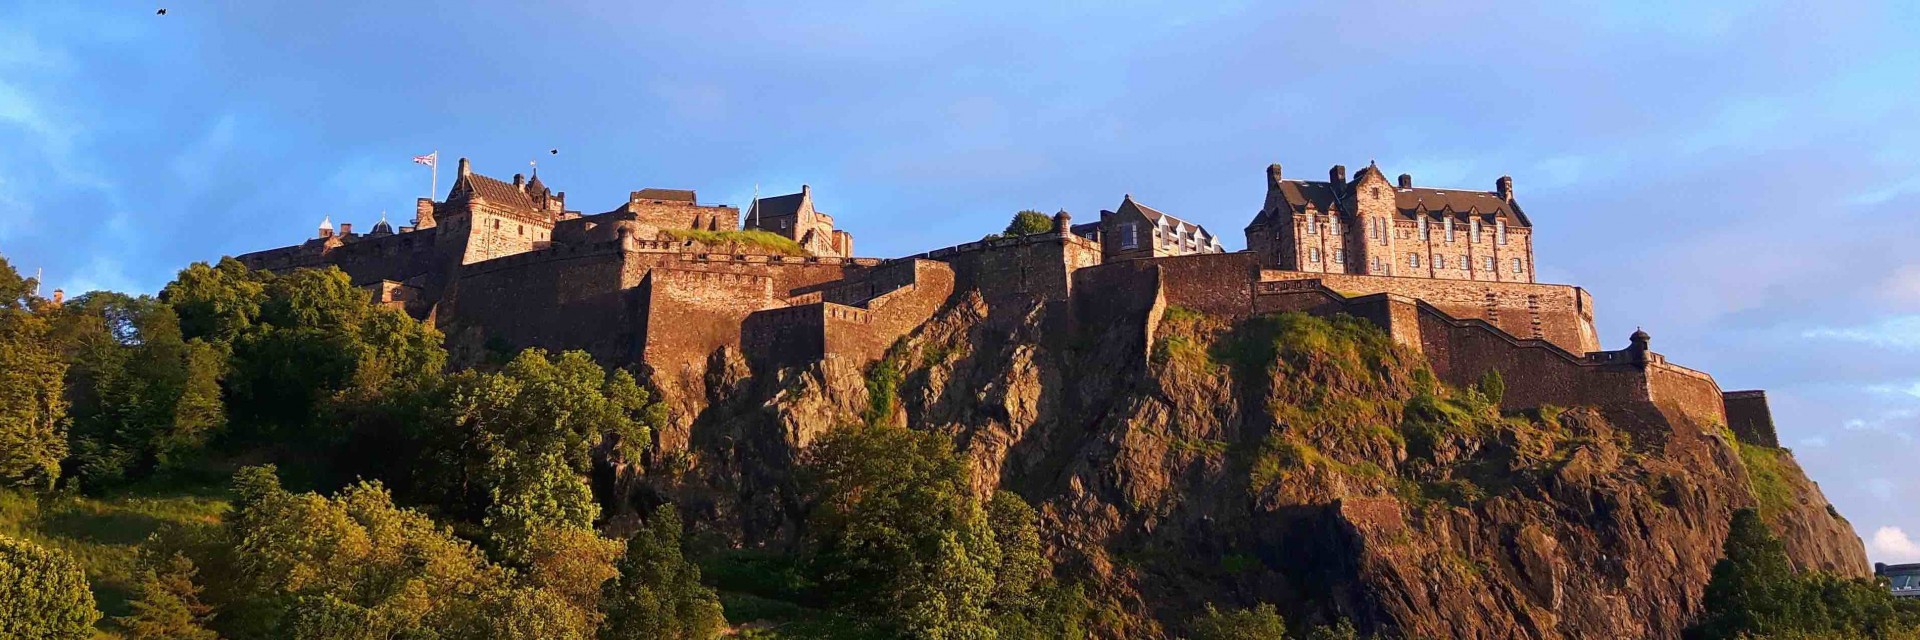 Scozia castello